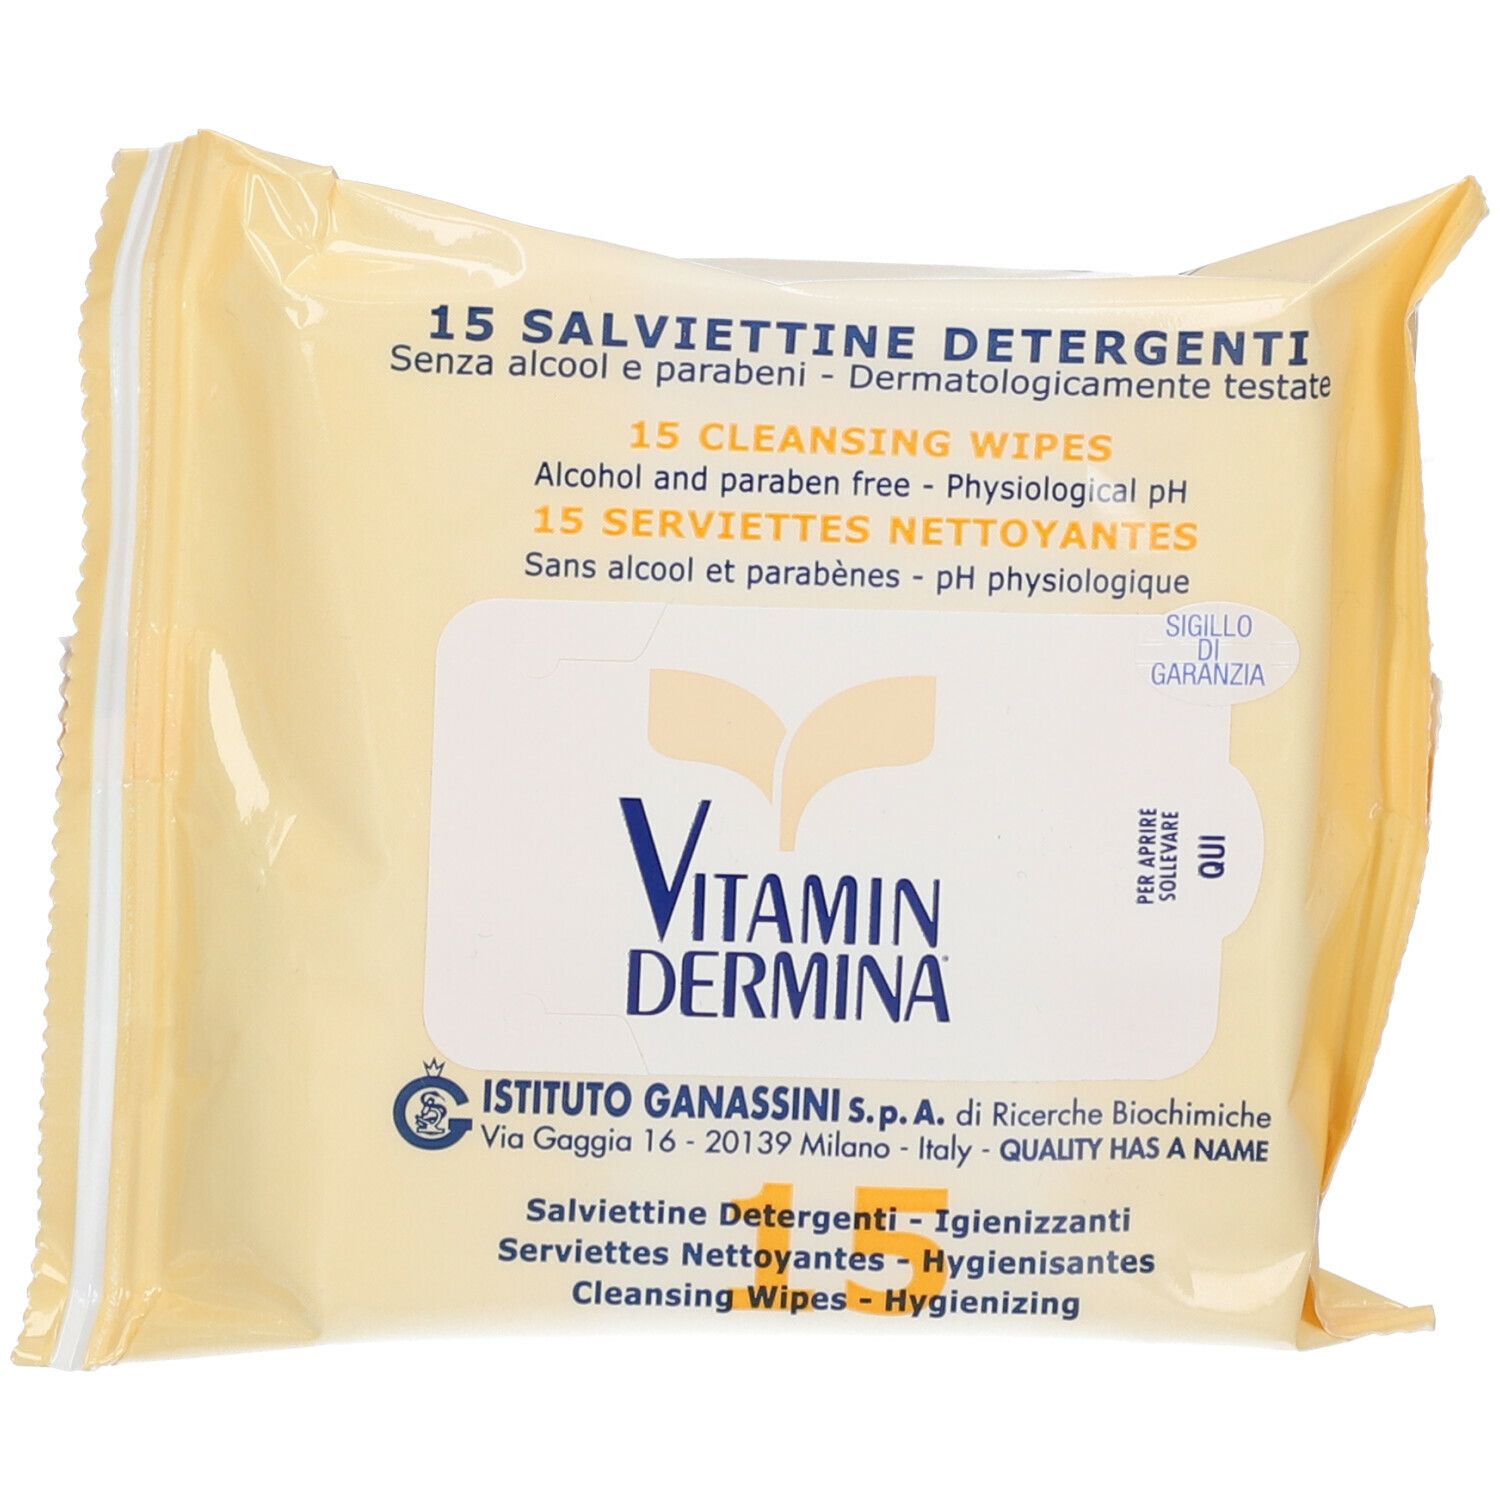 vitamin dermina 15 salviettine detergenti